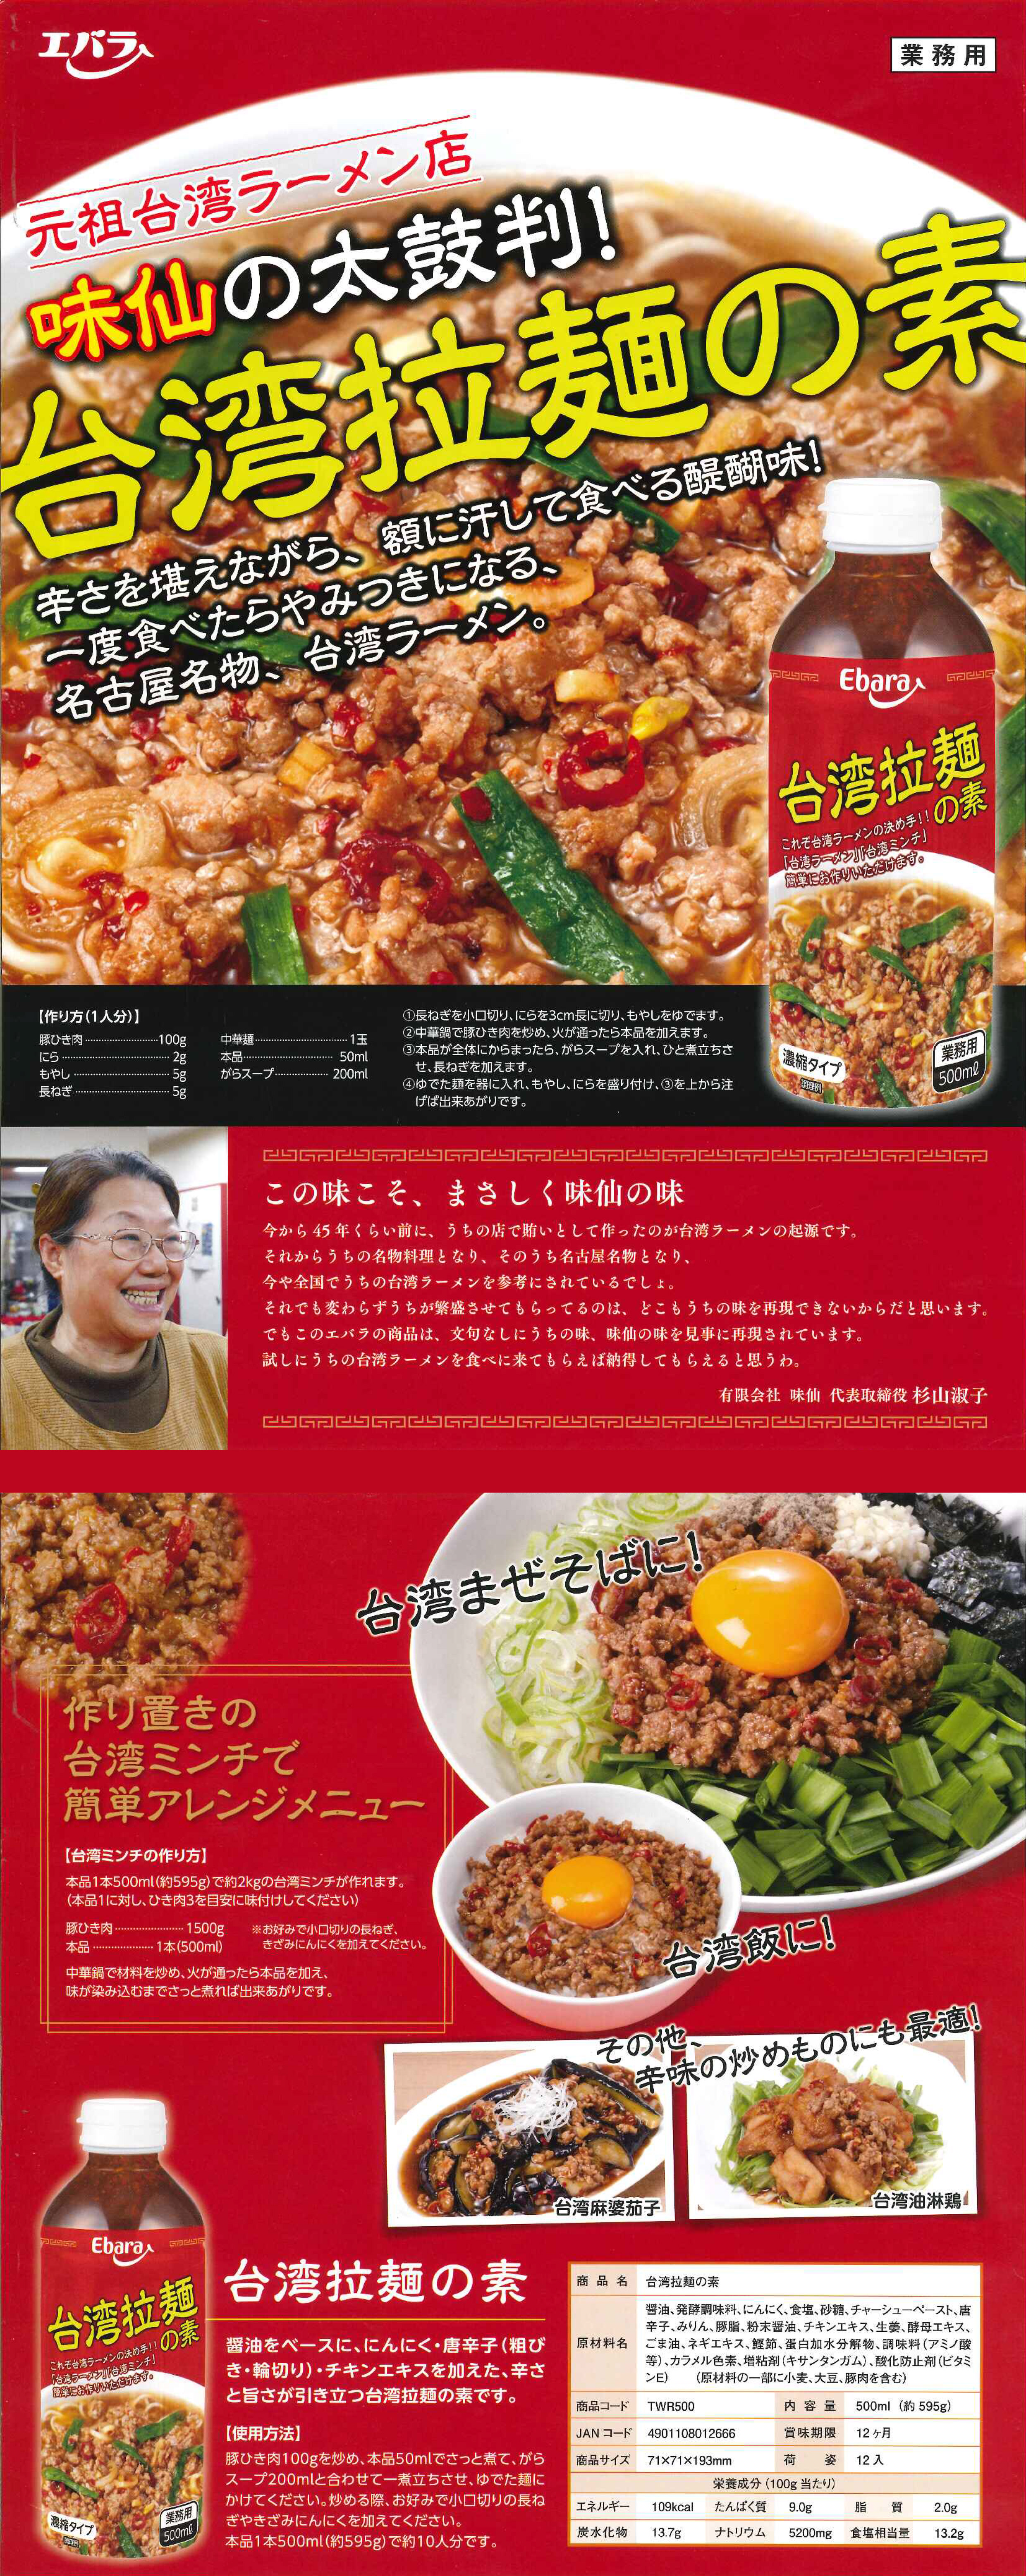 台湾拉麺の素